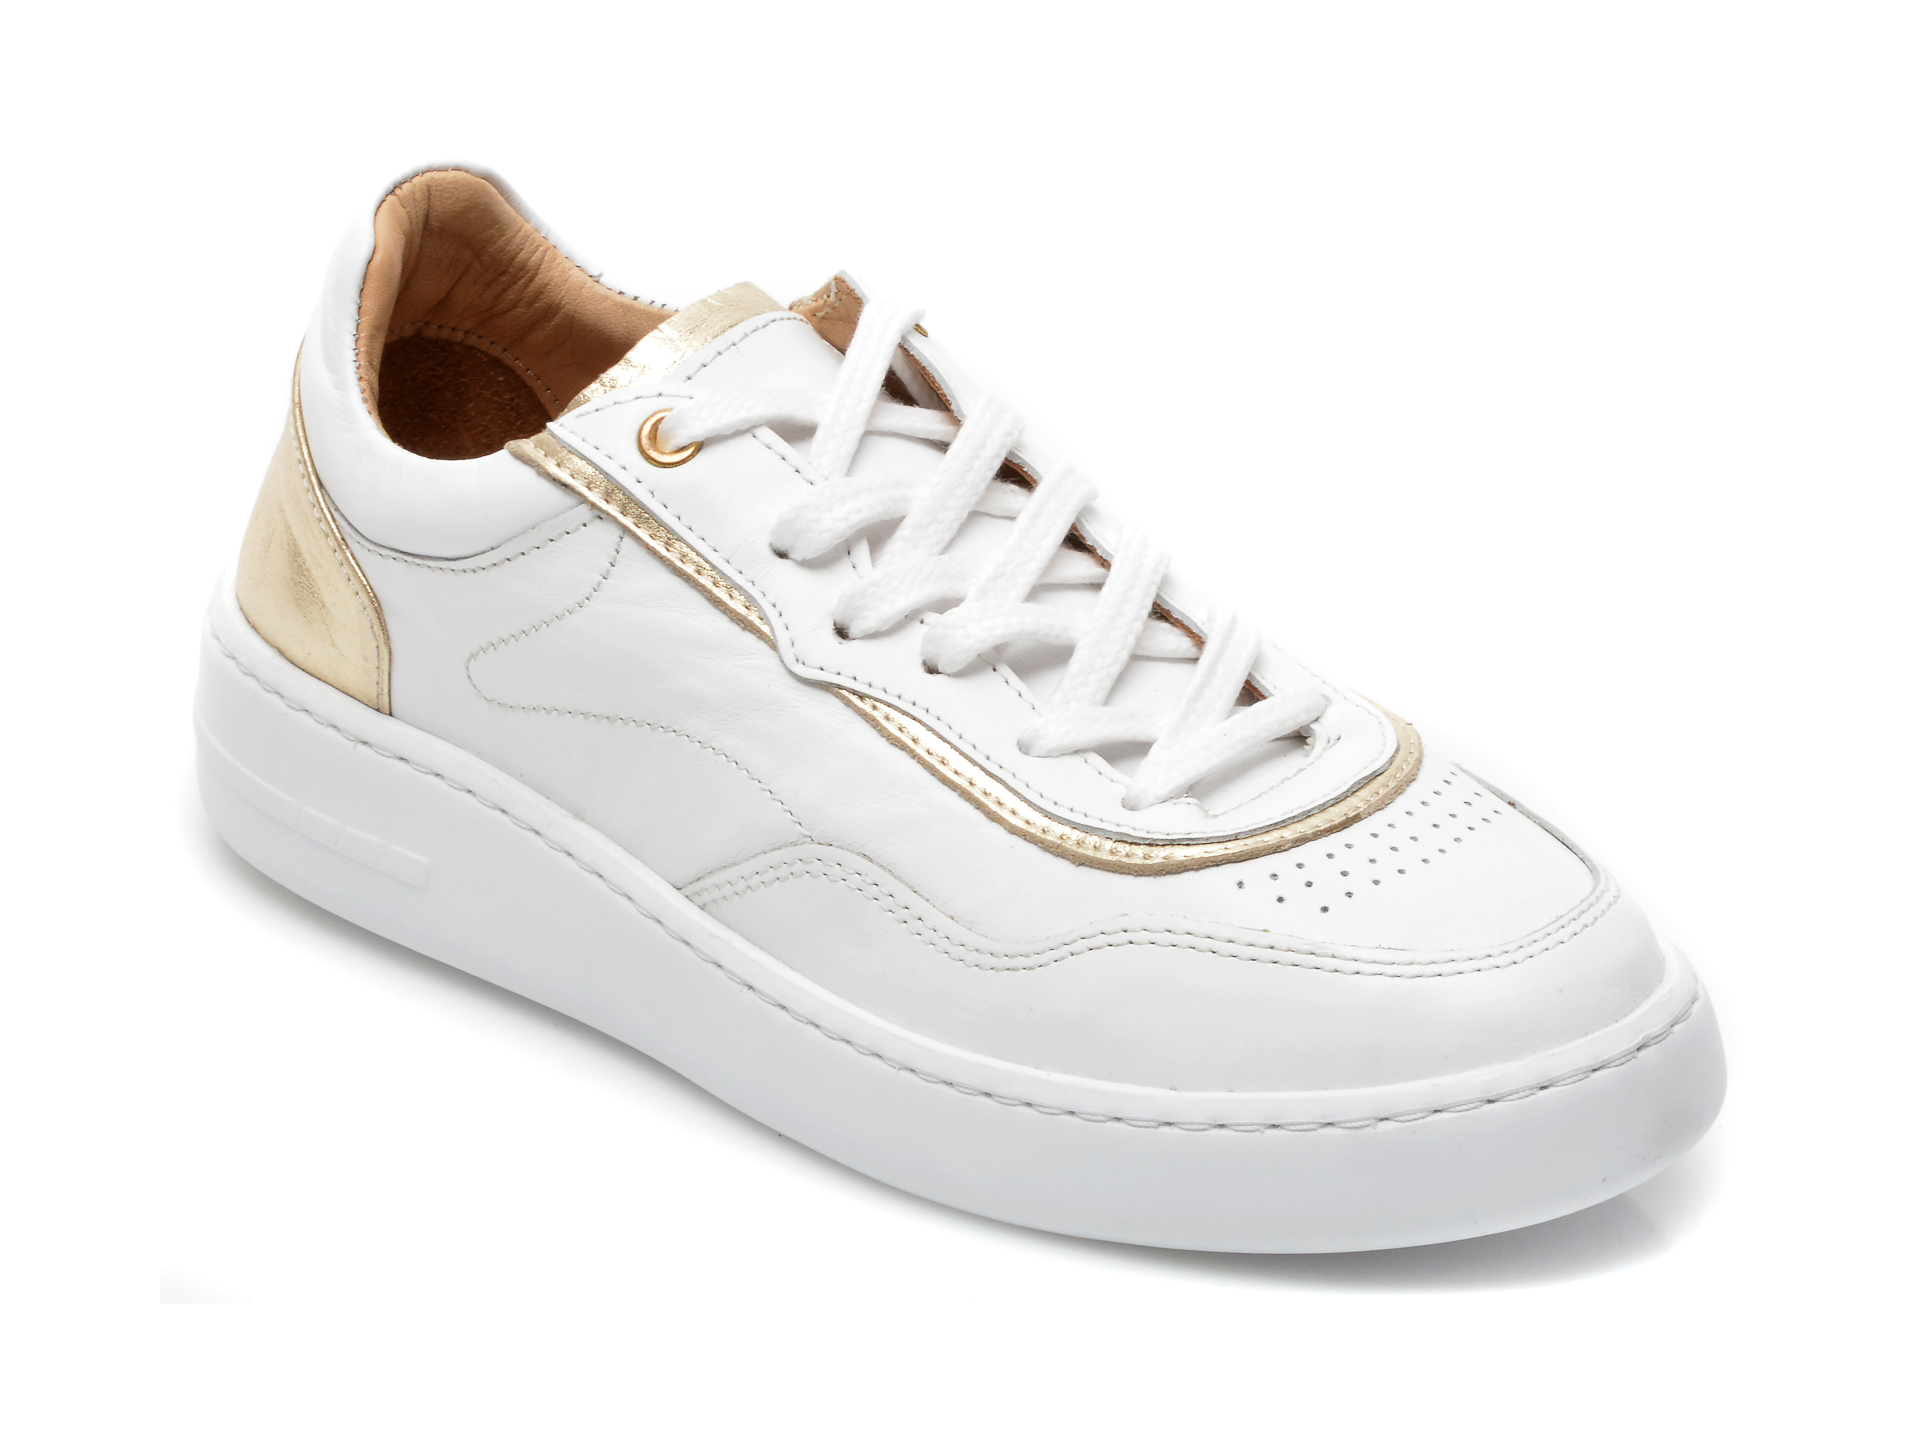 Pantofi FLAVIA PASSINI albi, 1110, din piele naturala Flavia Passini imagine noua